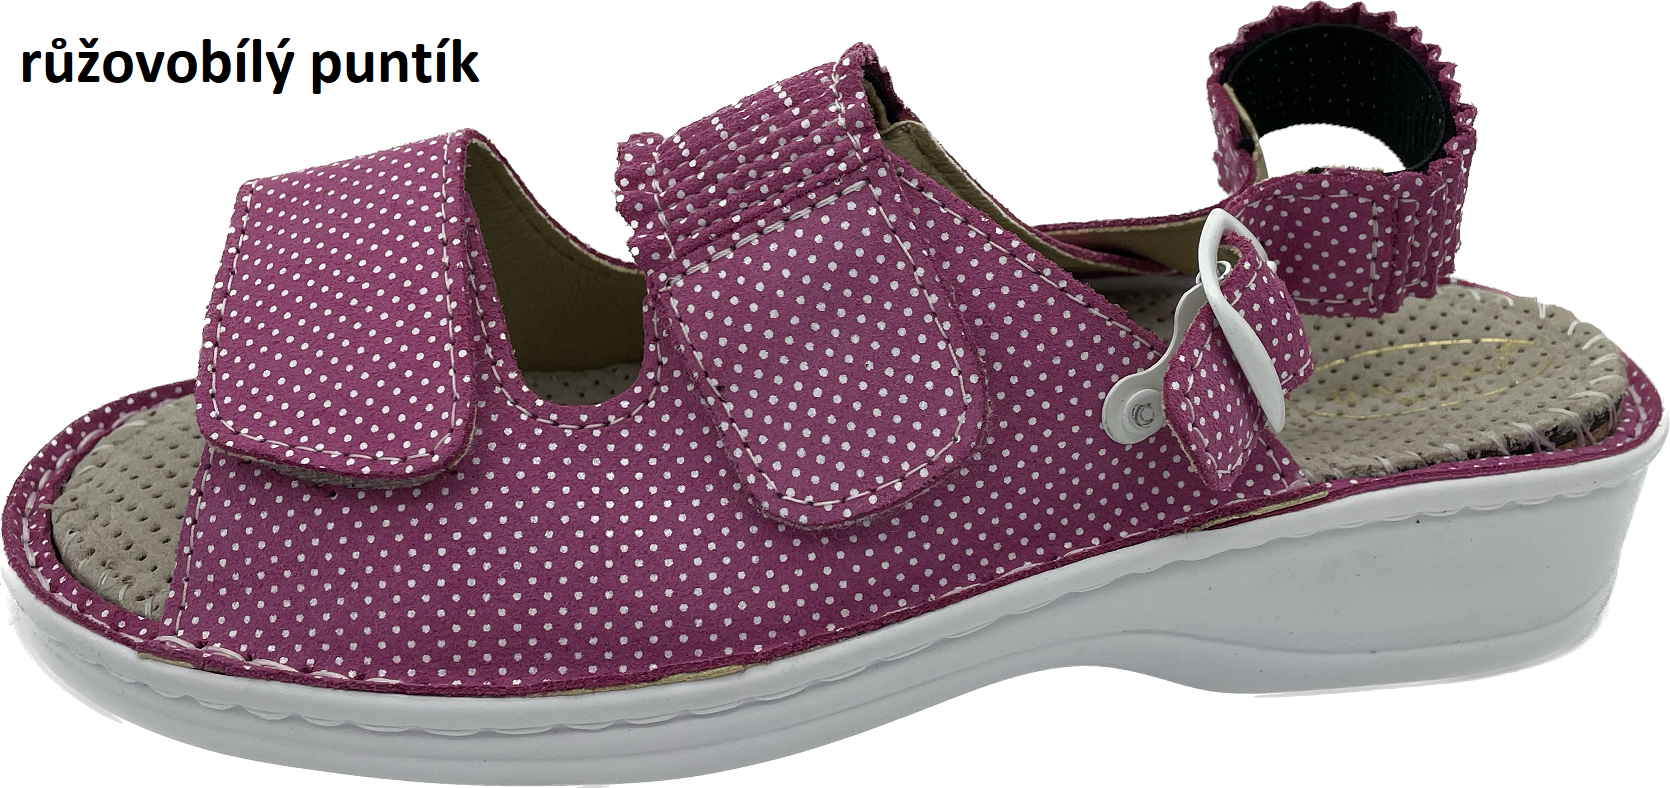 Boty Hanák vzor 304 P - bílá podešev Barva usně: růžovobílý puntík jemný, Velikosti obuvi: 42